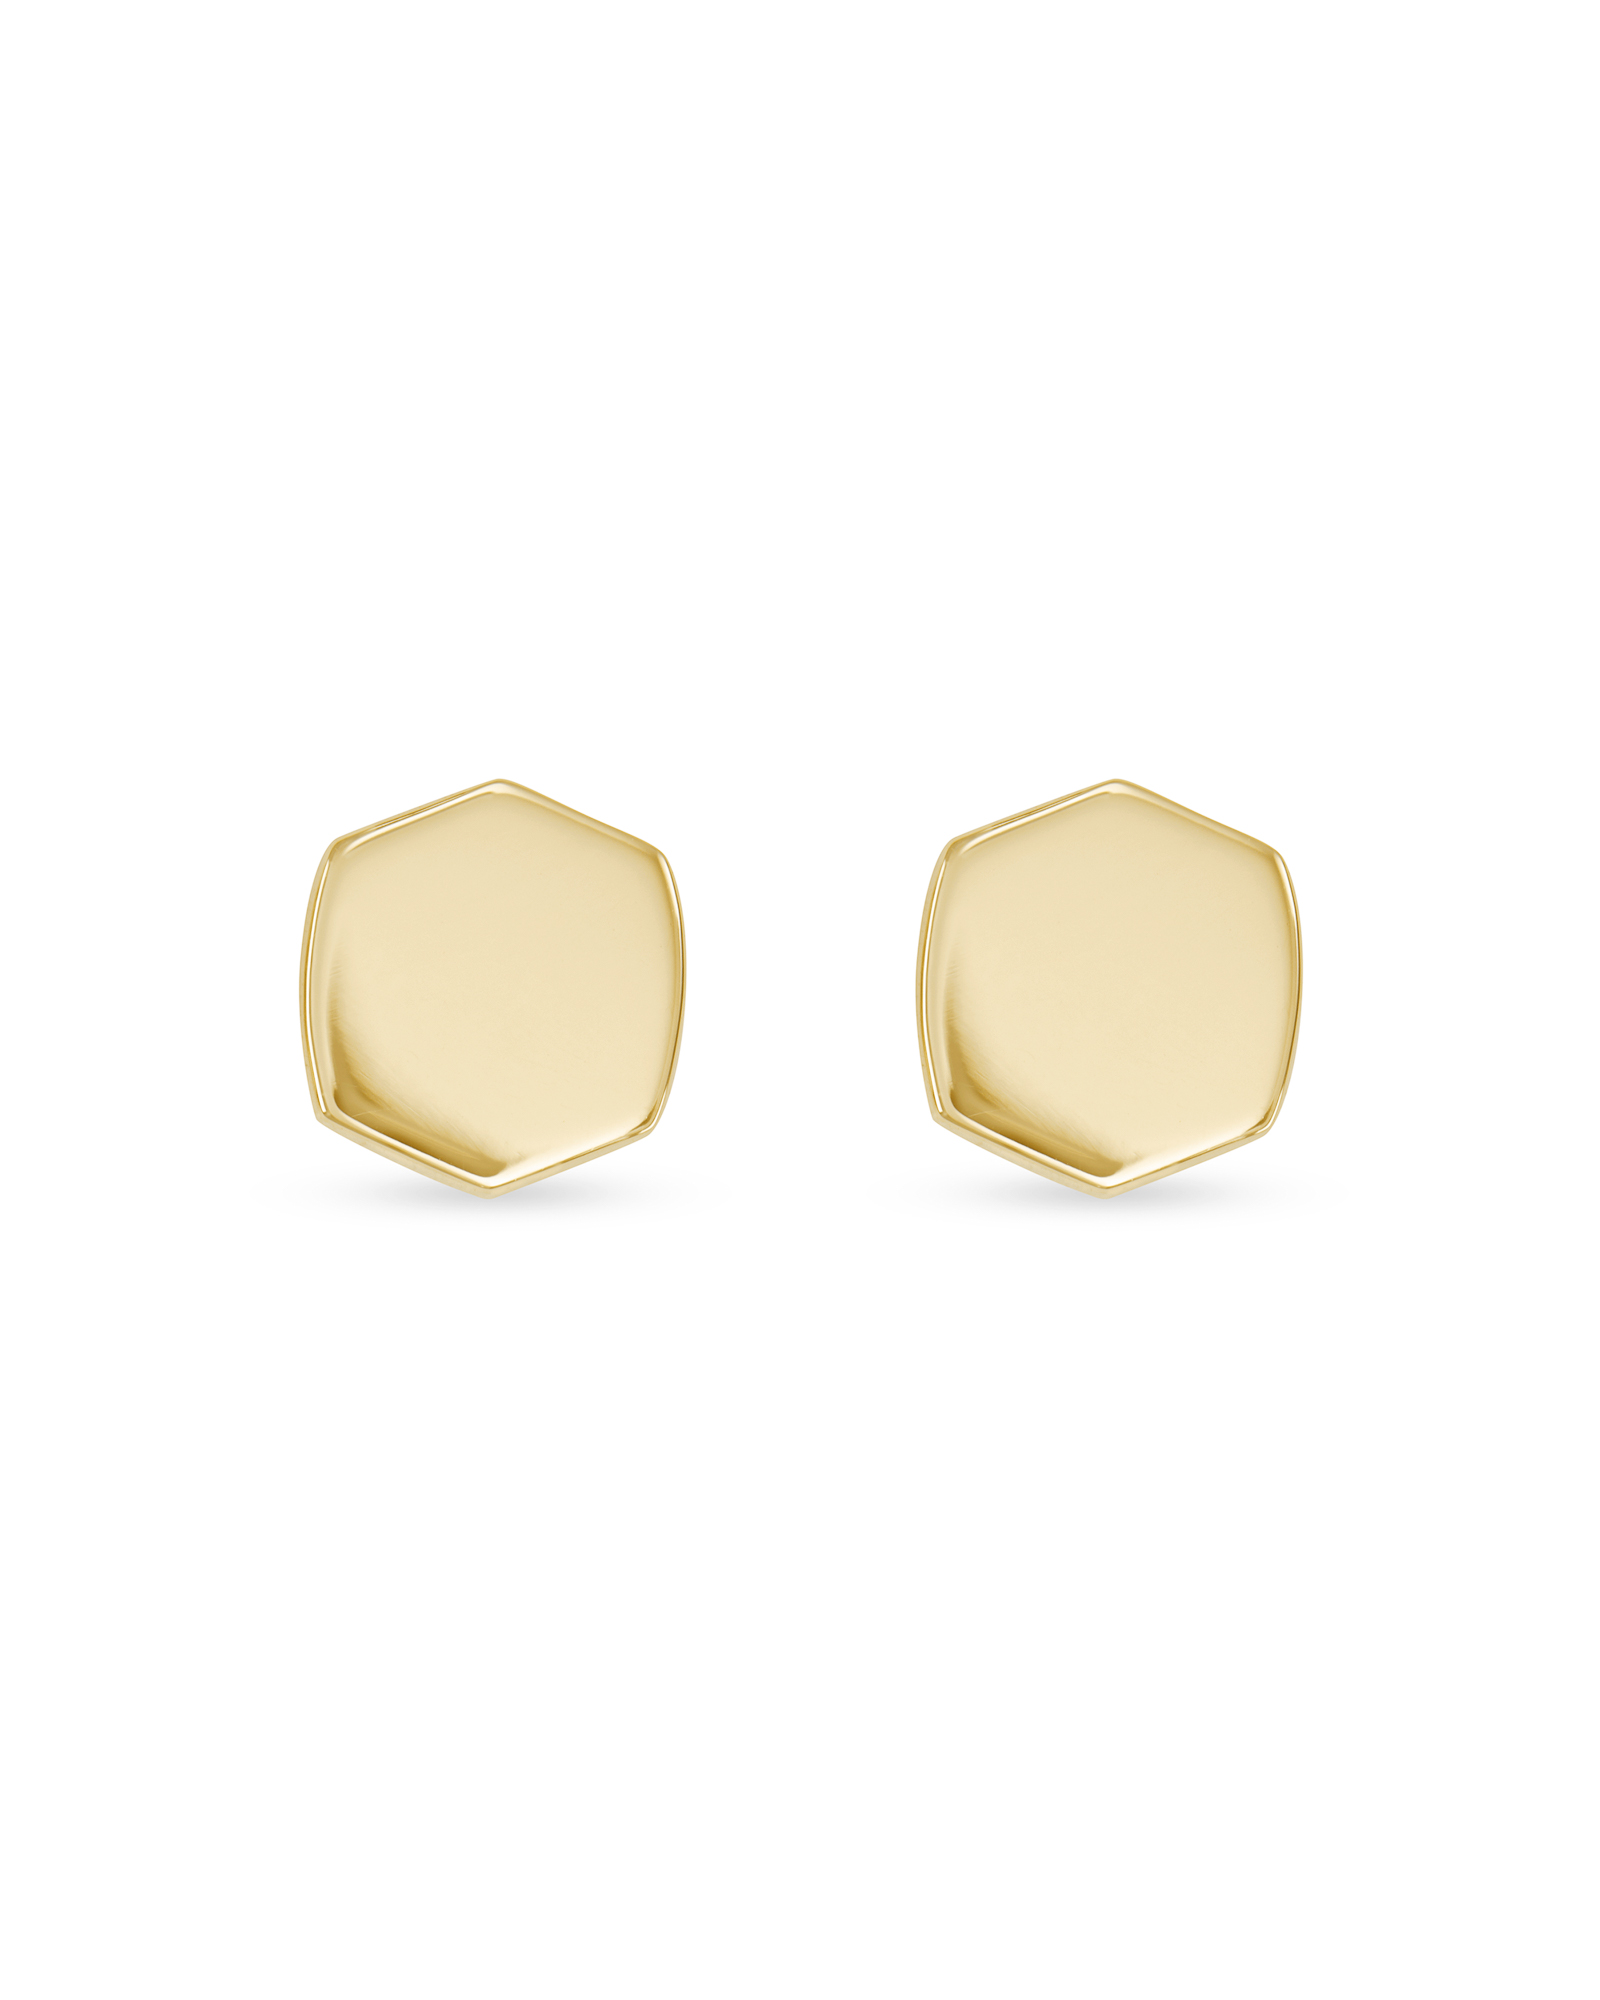 Davis Stud Earring in 18k Gold Vermeil | Kendra Scott